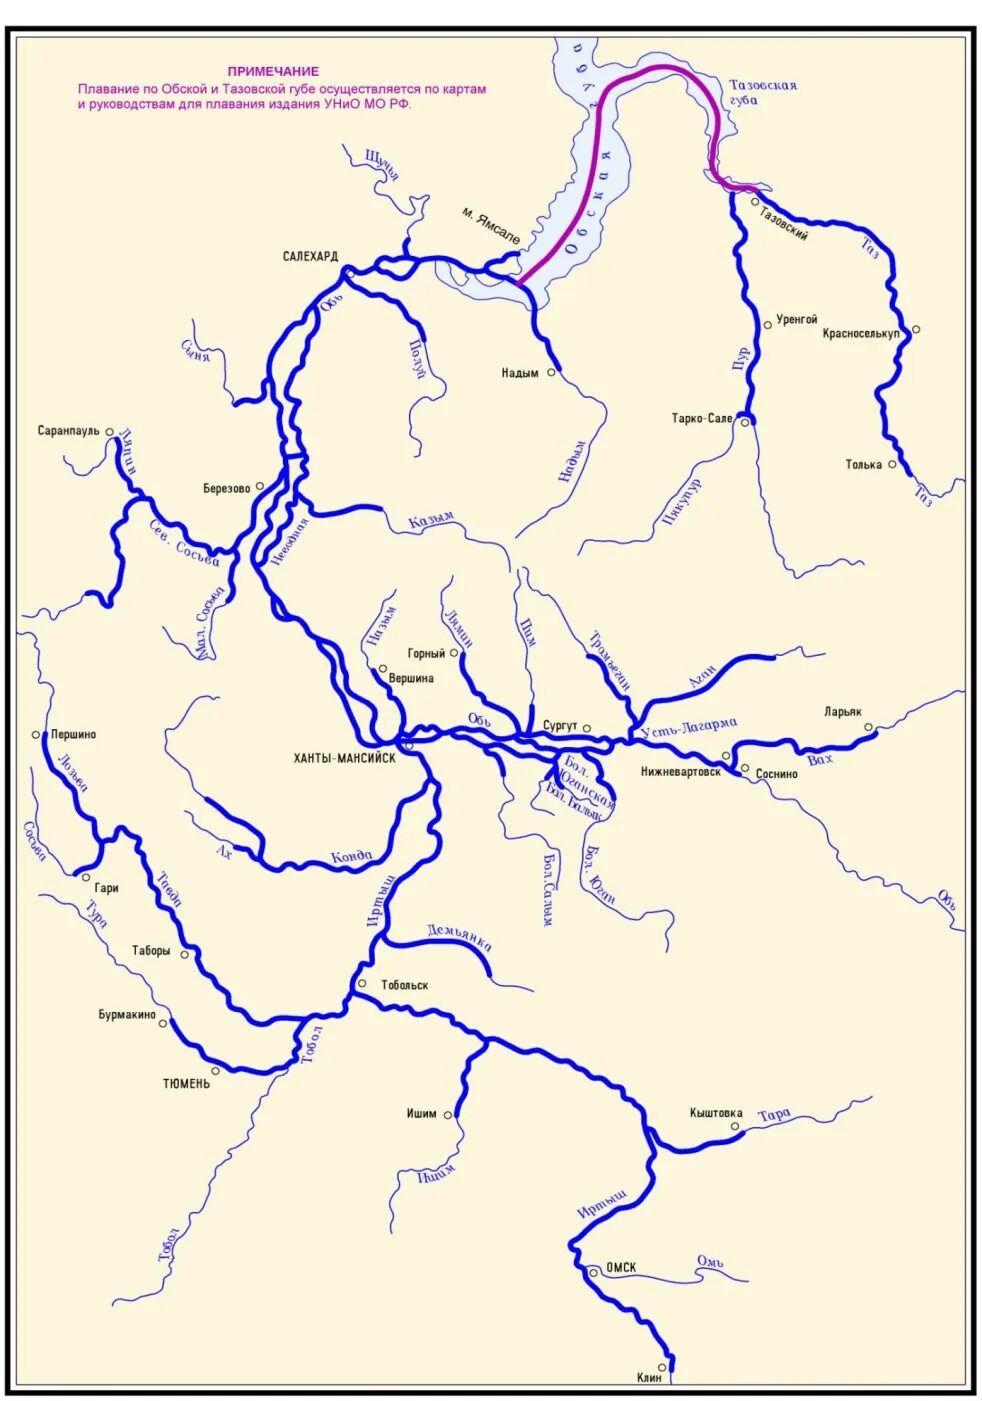 Бассейн реки Обь. Исток и Устье реки Обь на карте. Бассейн реки Обь на карте. Схема реки Енисей.